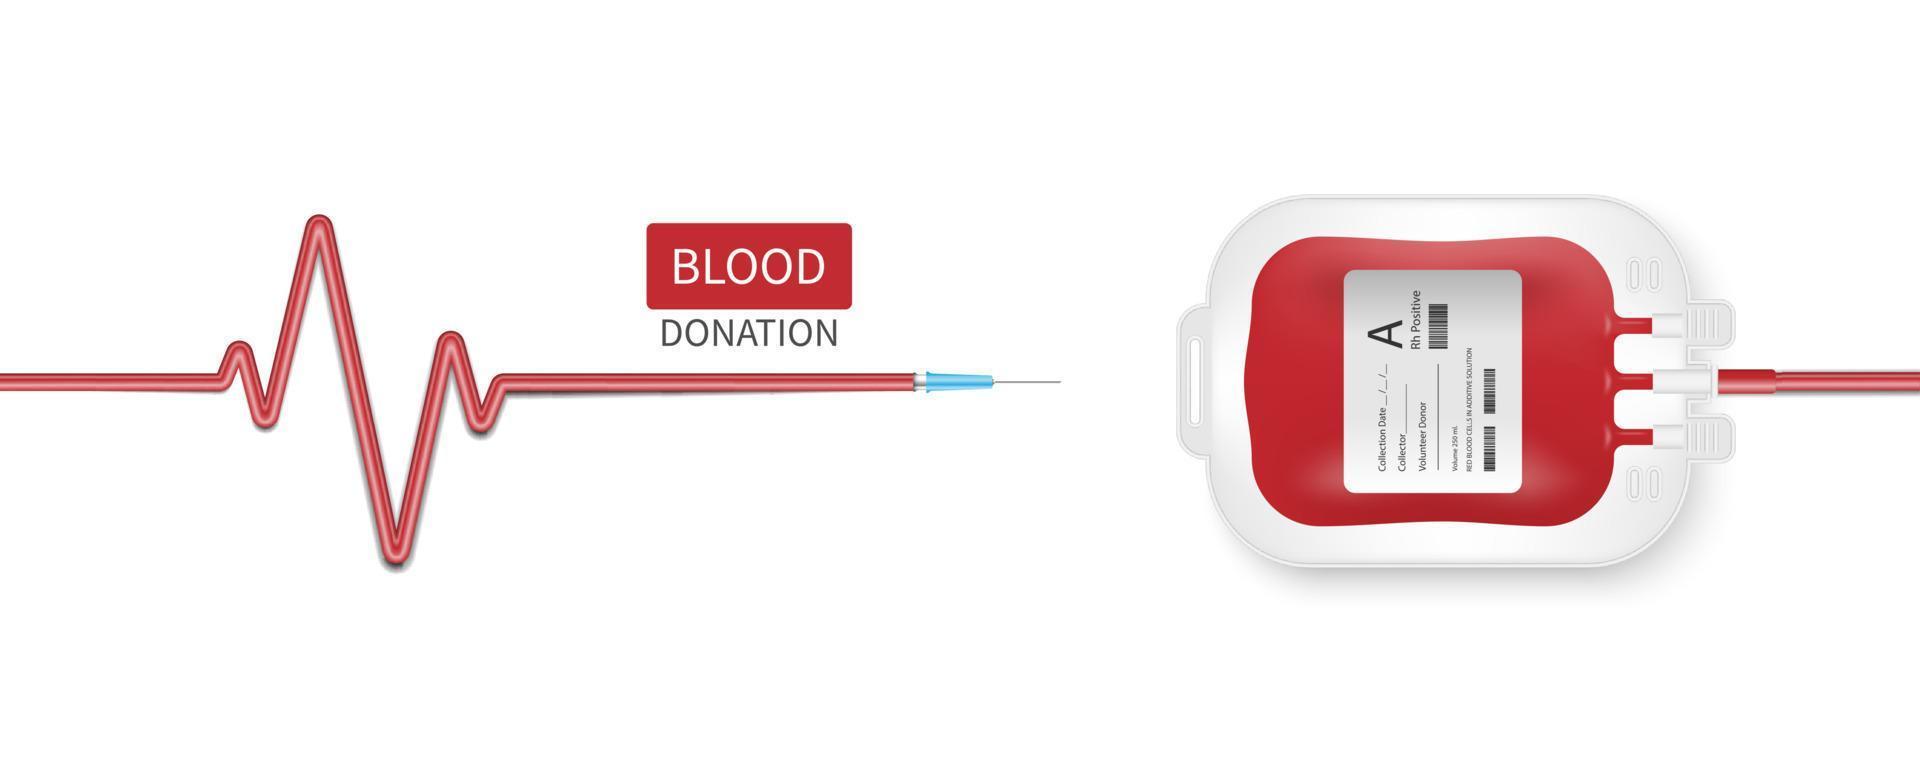 conceito de doação de sangue, bolsa de sangue isolada no fundo branco, ilustração vetorial vetor